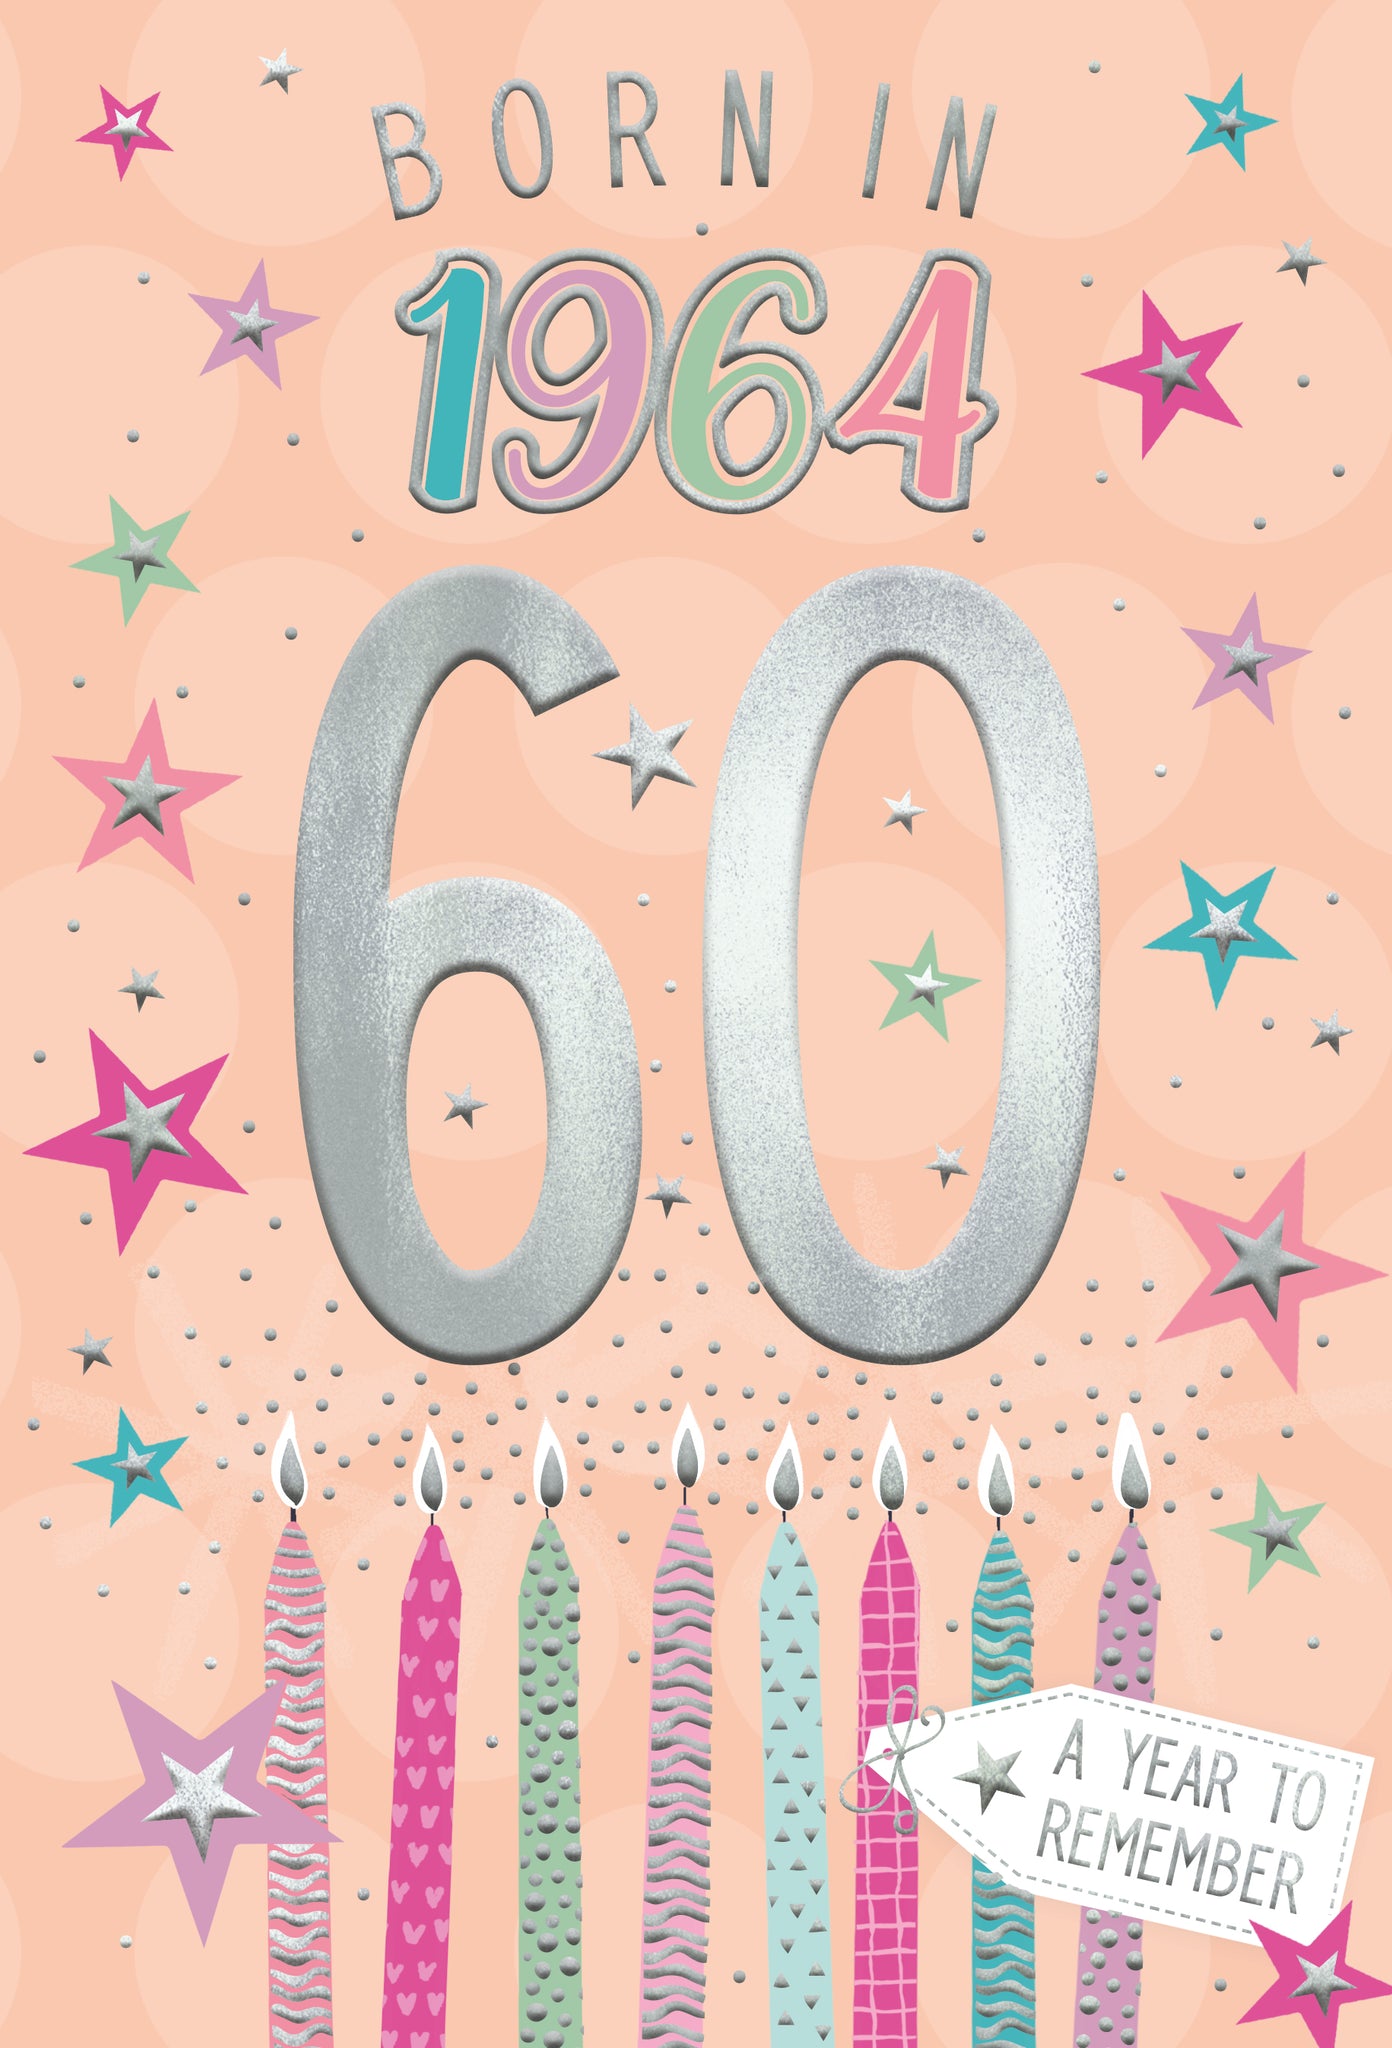 60th birthday card - born in 1964